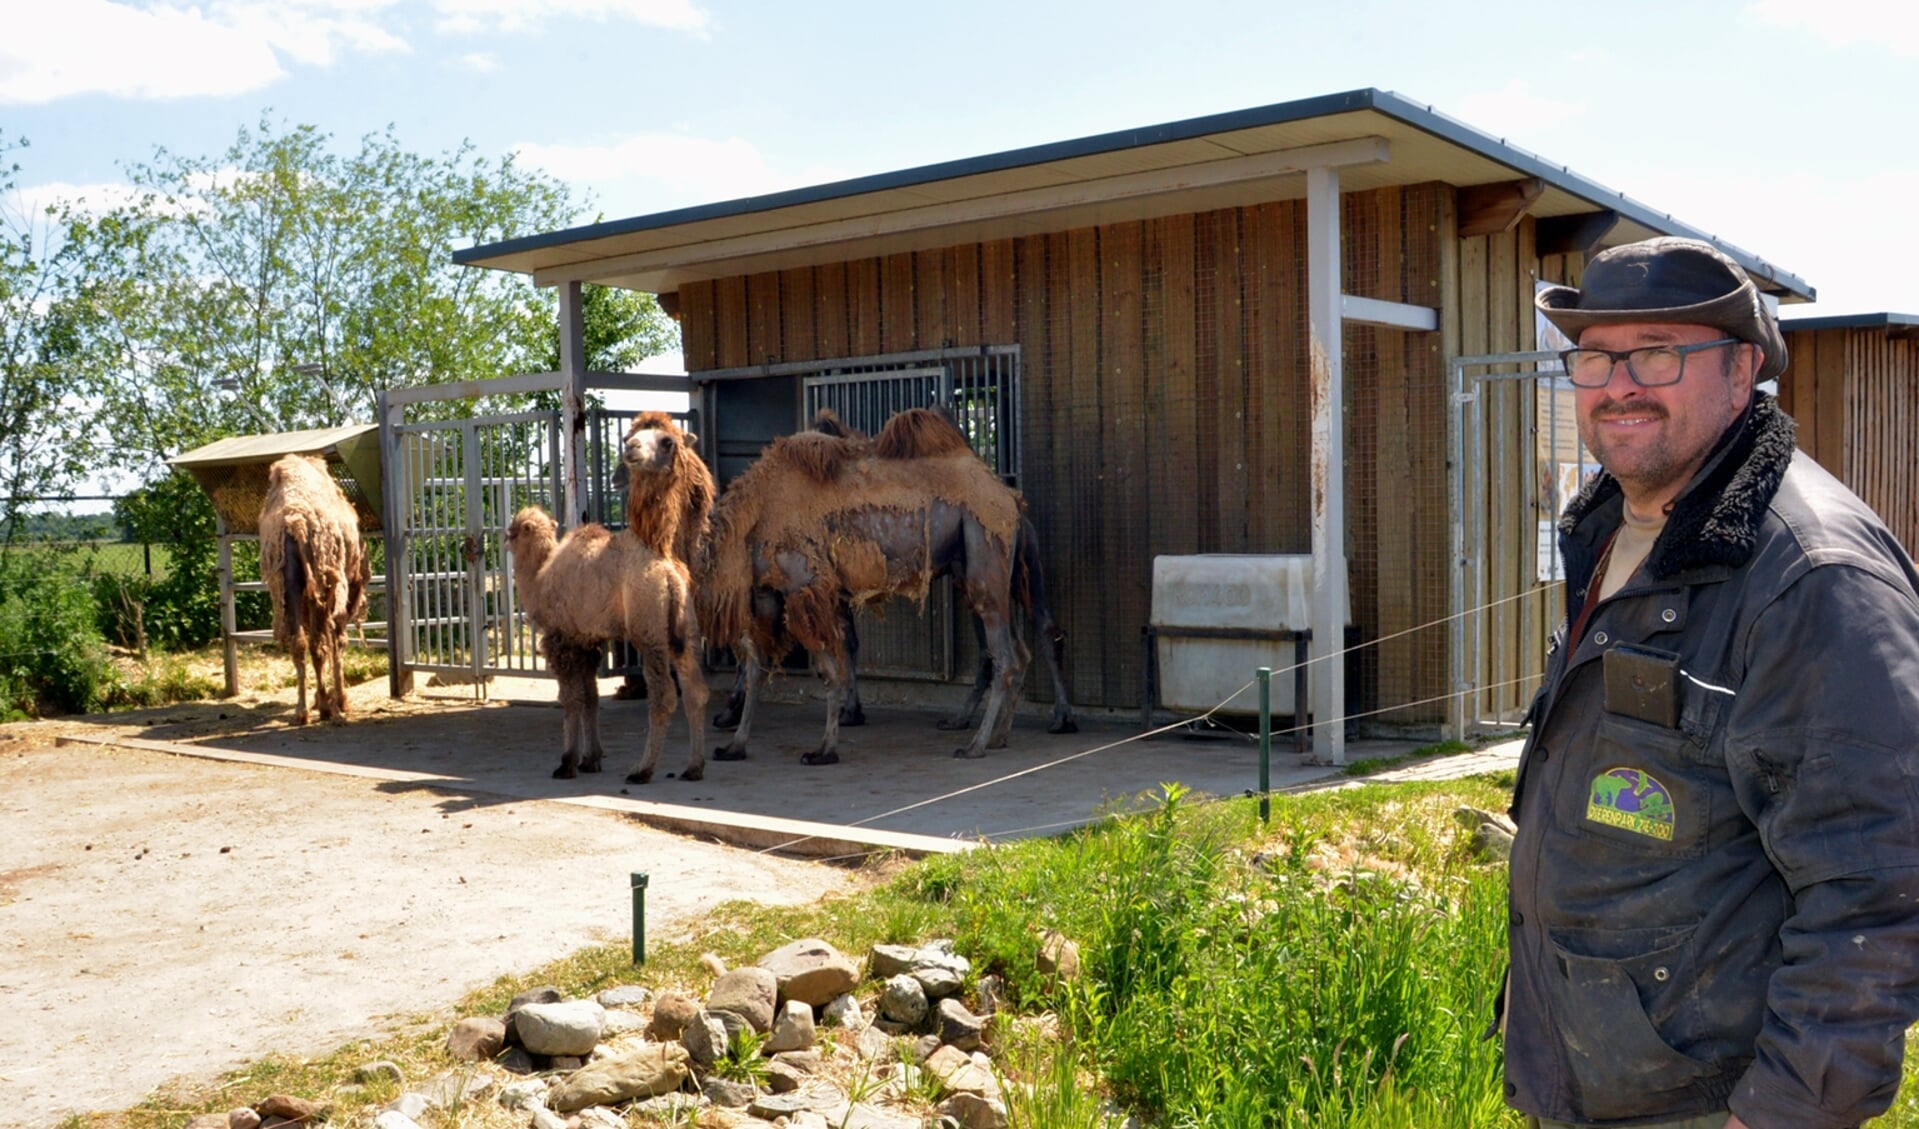 Directeur Eeg Manders bij het kamelenverblijf, waar deze maand een kameelveulen werd geboren. (foto: Henk Lunenburg)